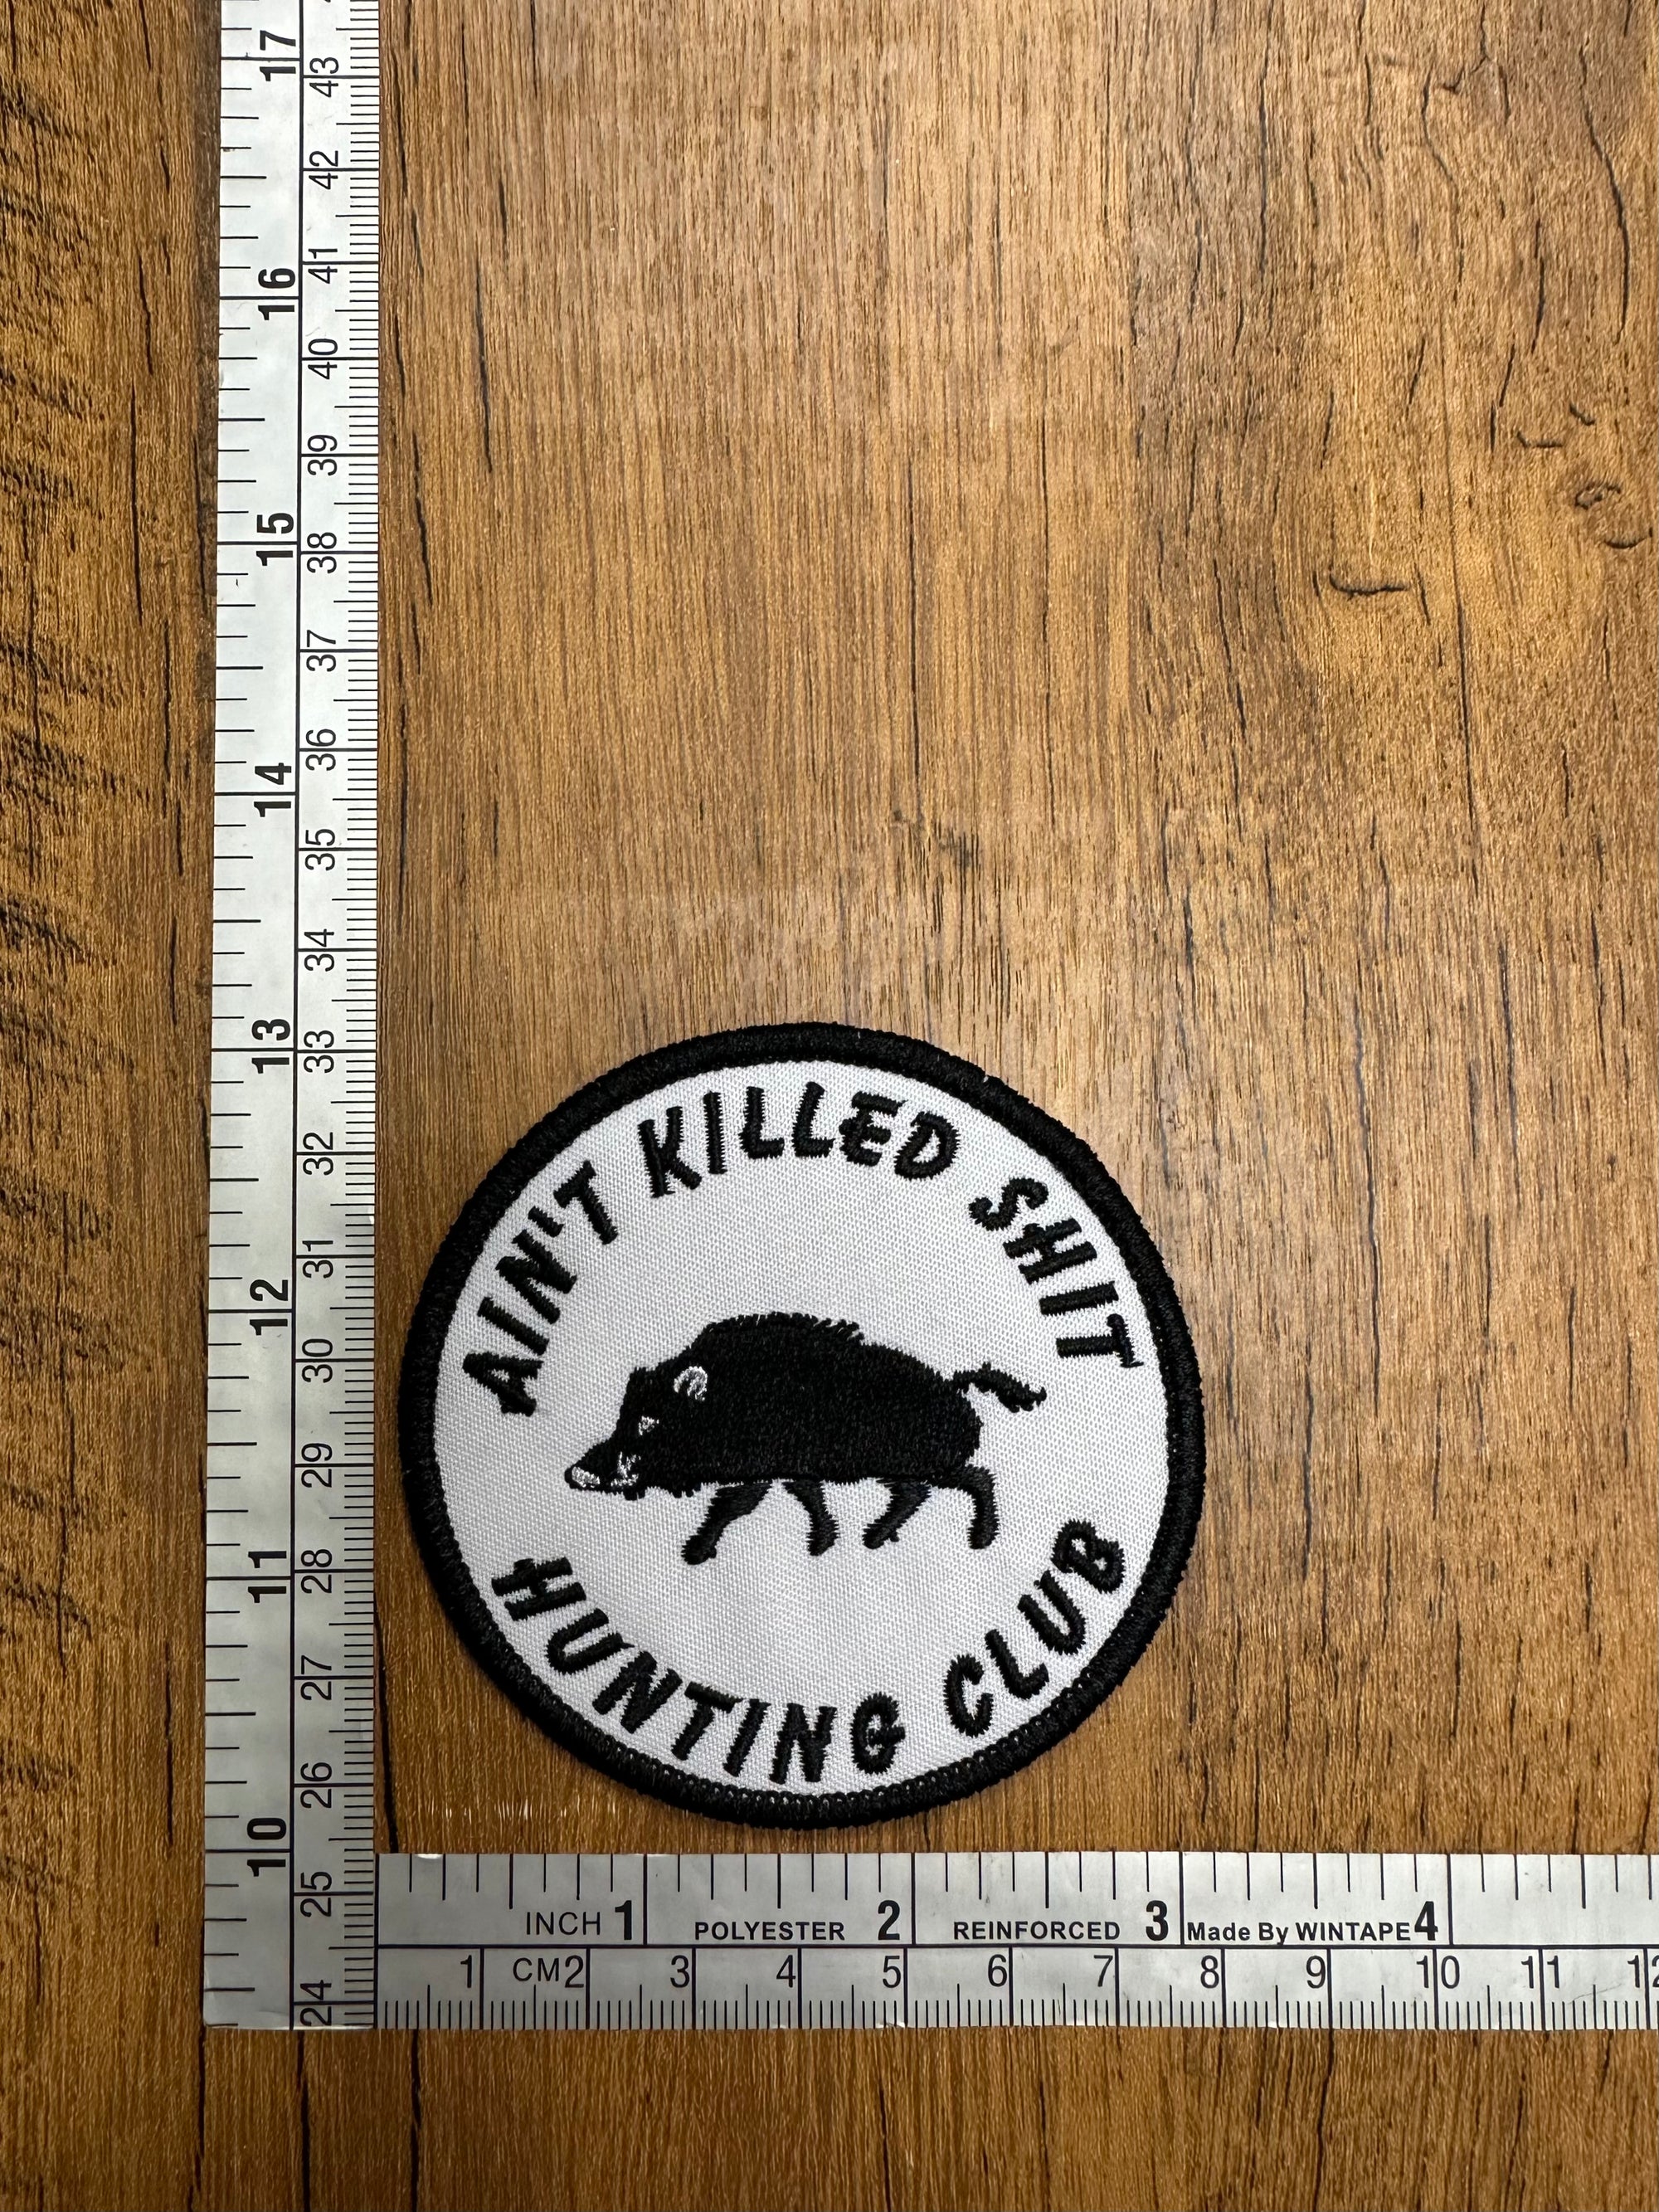 Ain’t Killed Sh*t Hunting Club